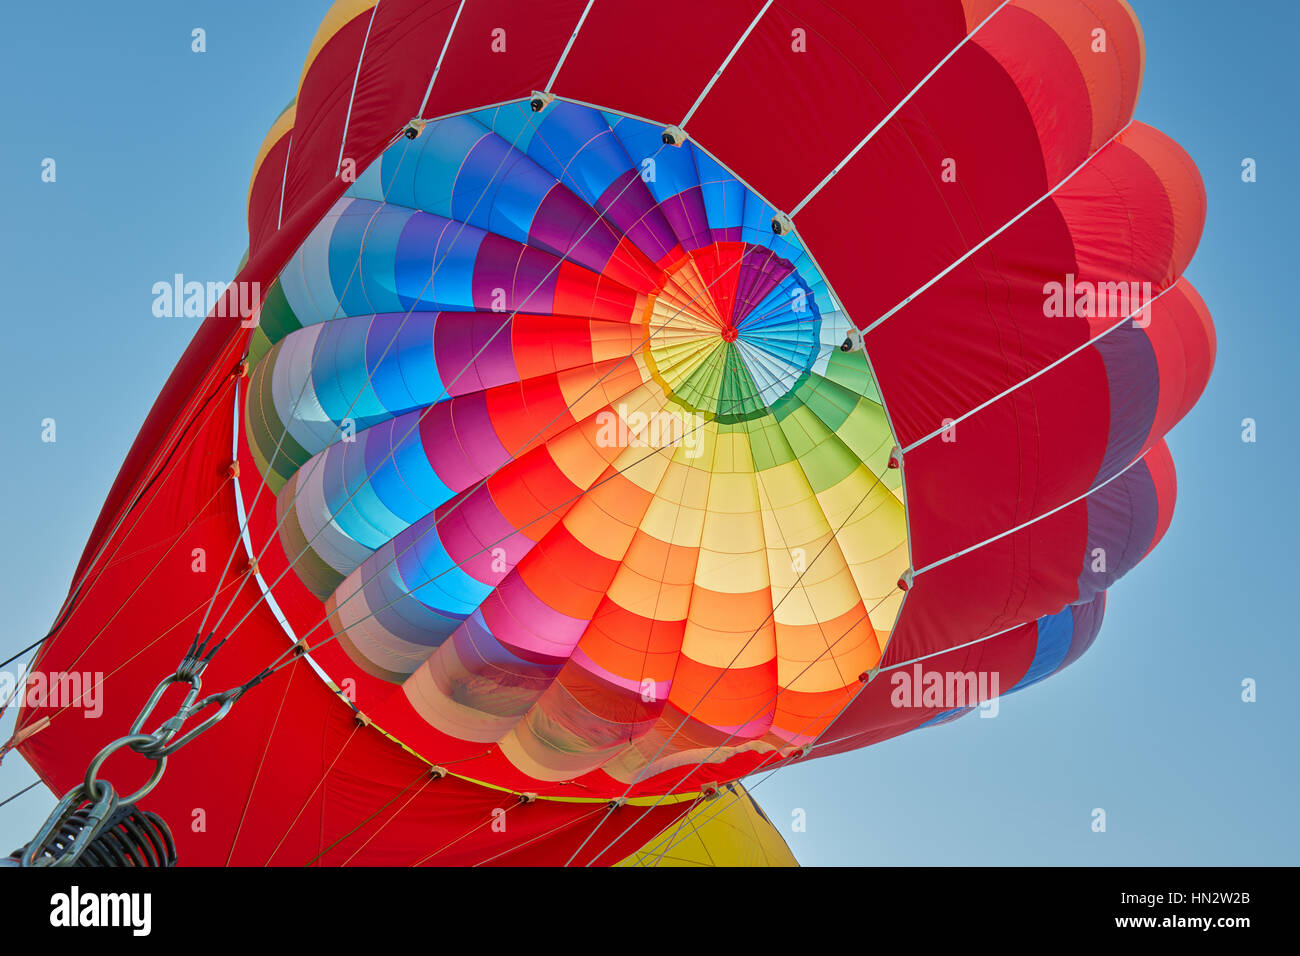 Ballon à air chaud, aérostat colorés du gonflage, ciel bleu Banque D'Images